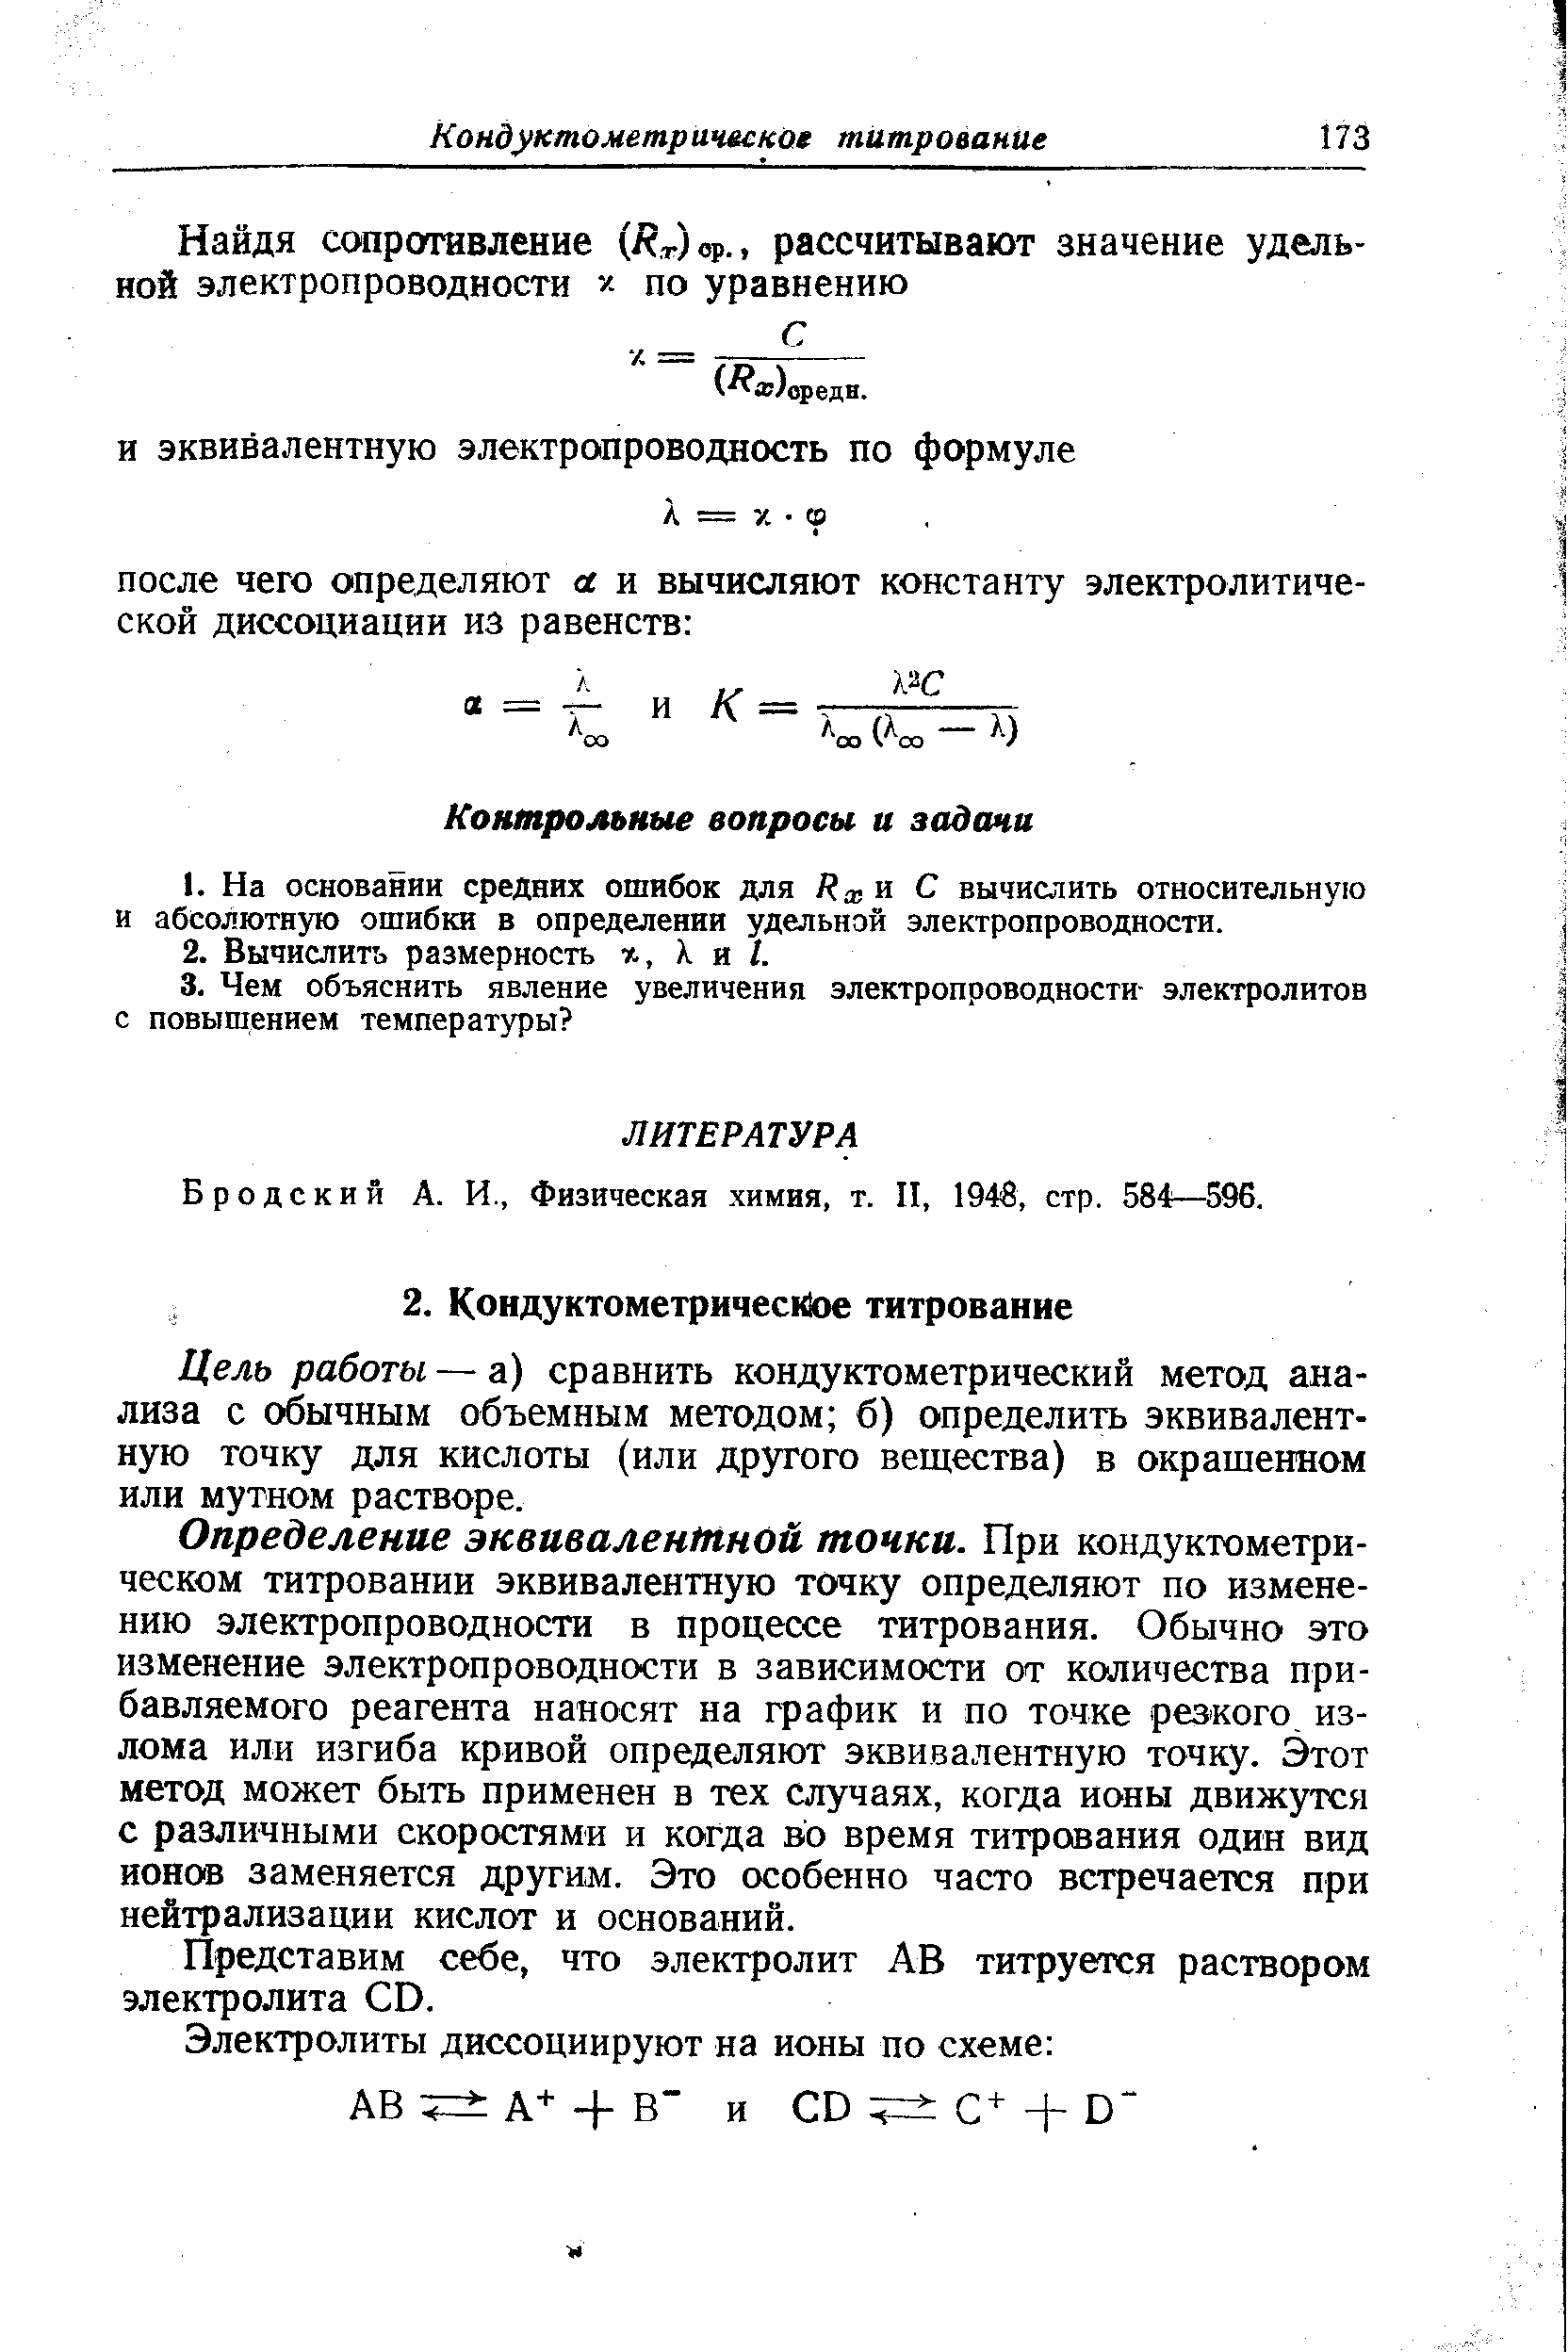 Бродский А. И., Физическая химия, т. II, 1946, стр. 584—596.